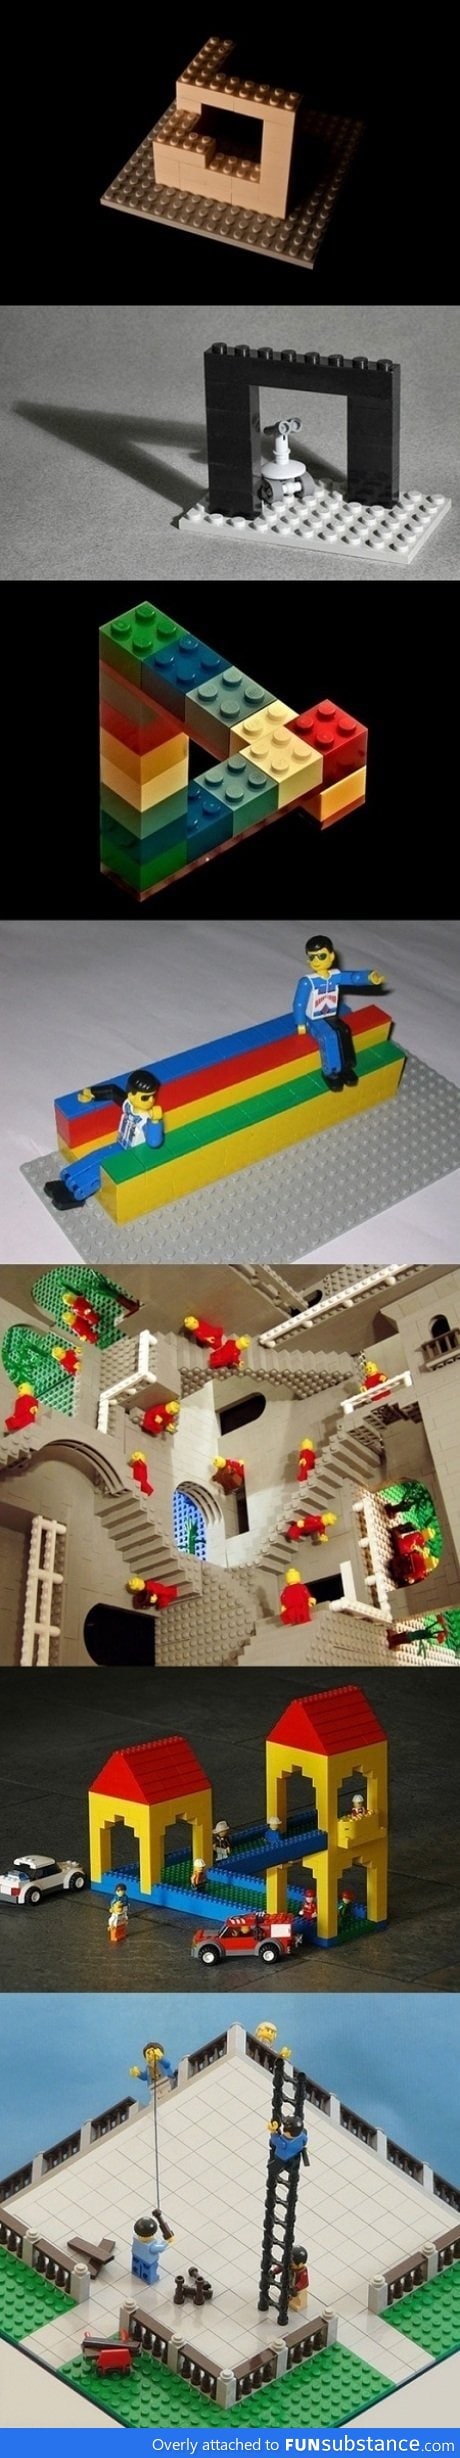 Lego Illusions